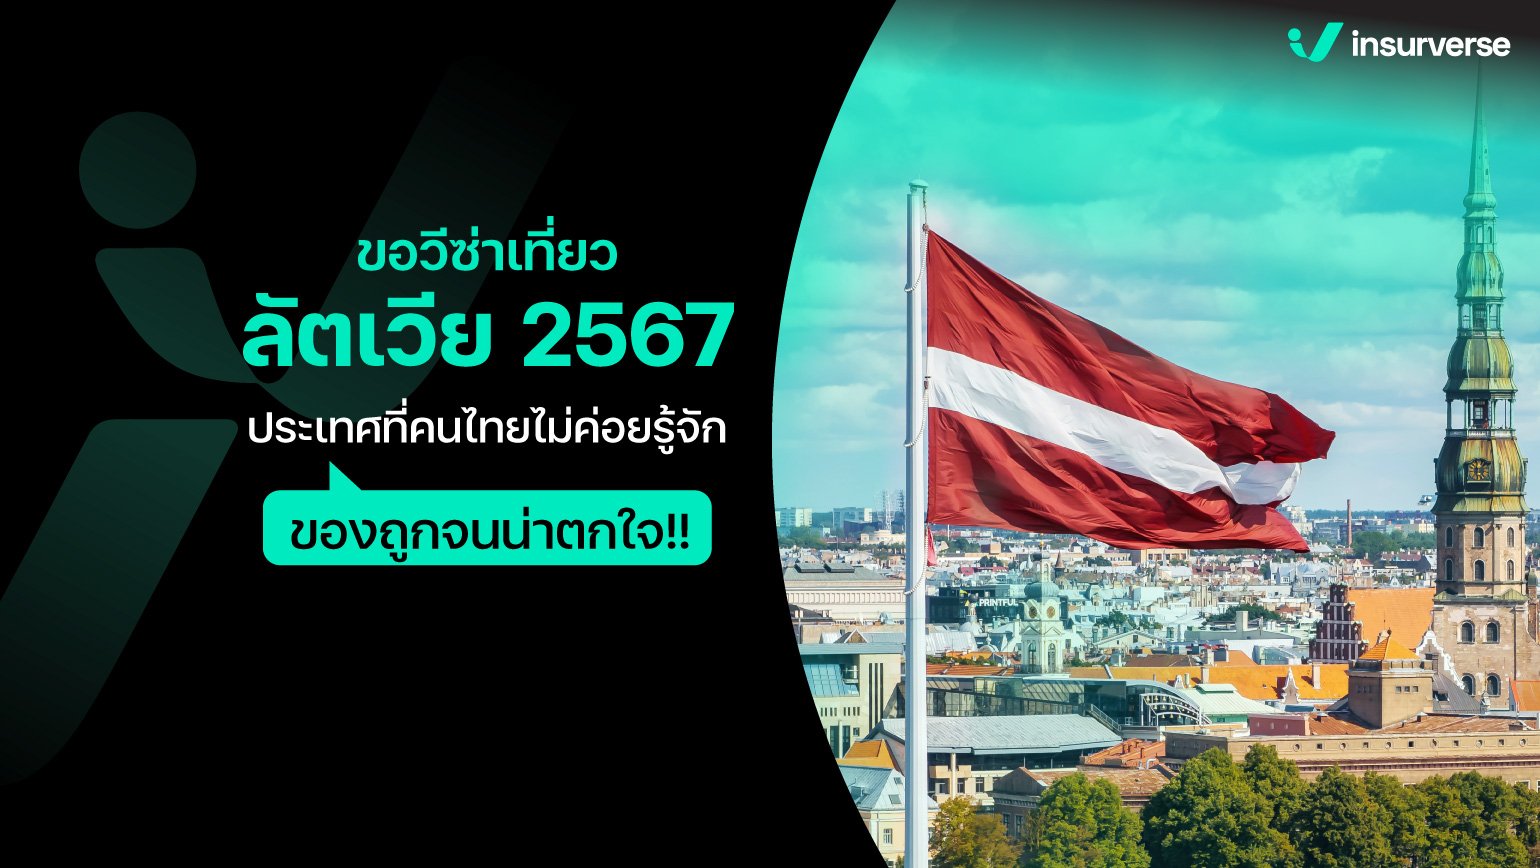 ขอวีซ่าเที่ยวลัตเวีย 2567 ประเทศที่คนไทยไม่ค่อยรู้จัก ของถูกจนน่าตกใจ!!